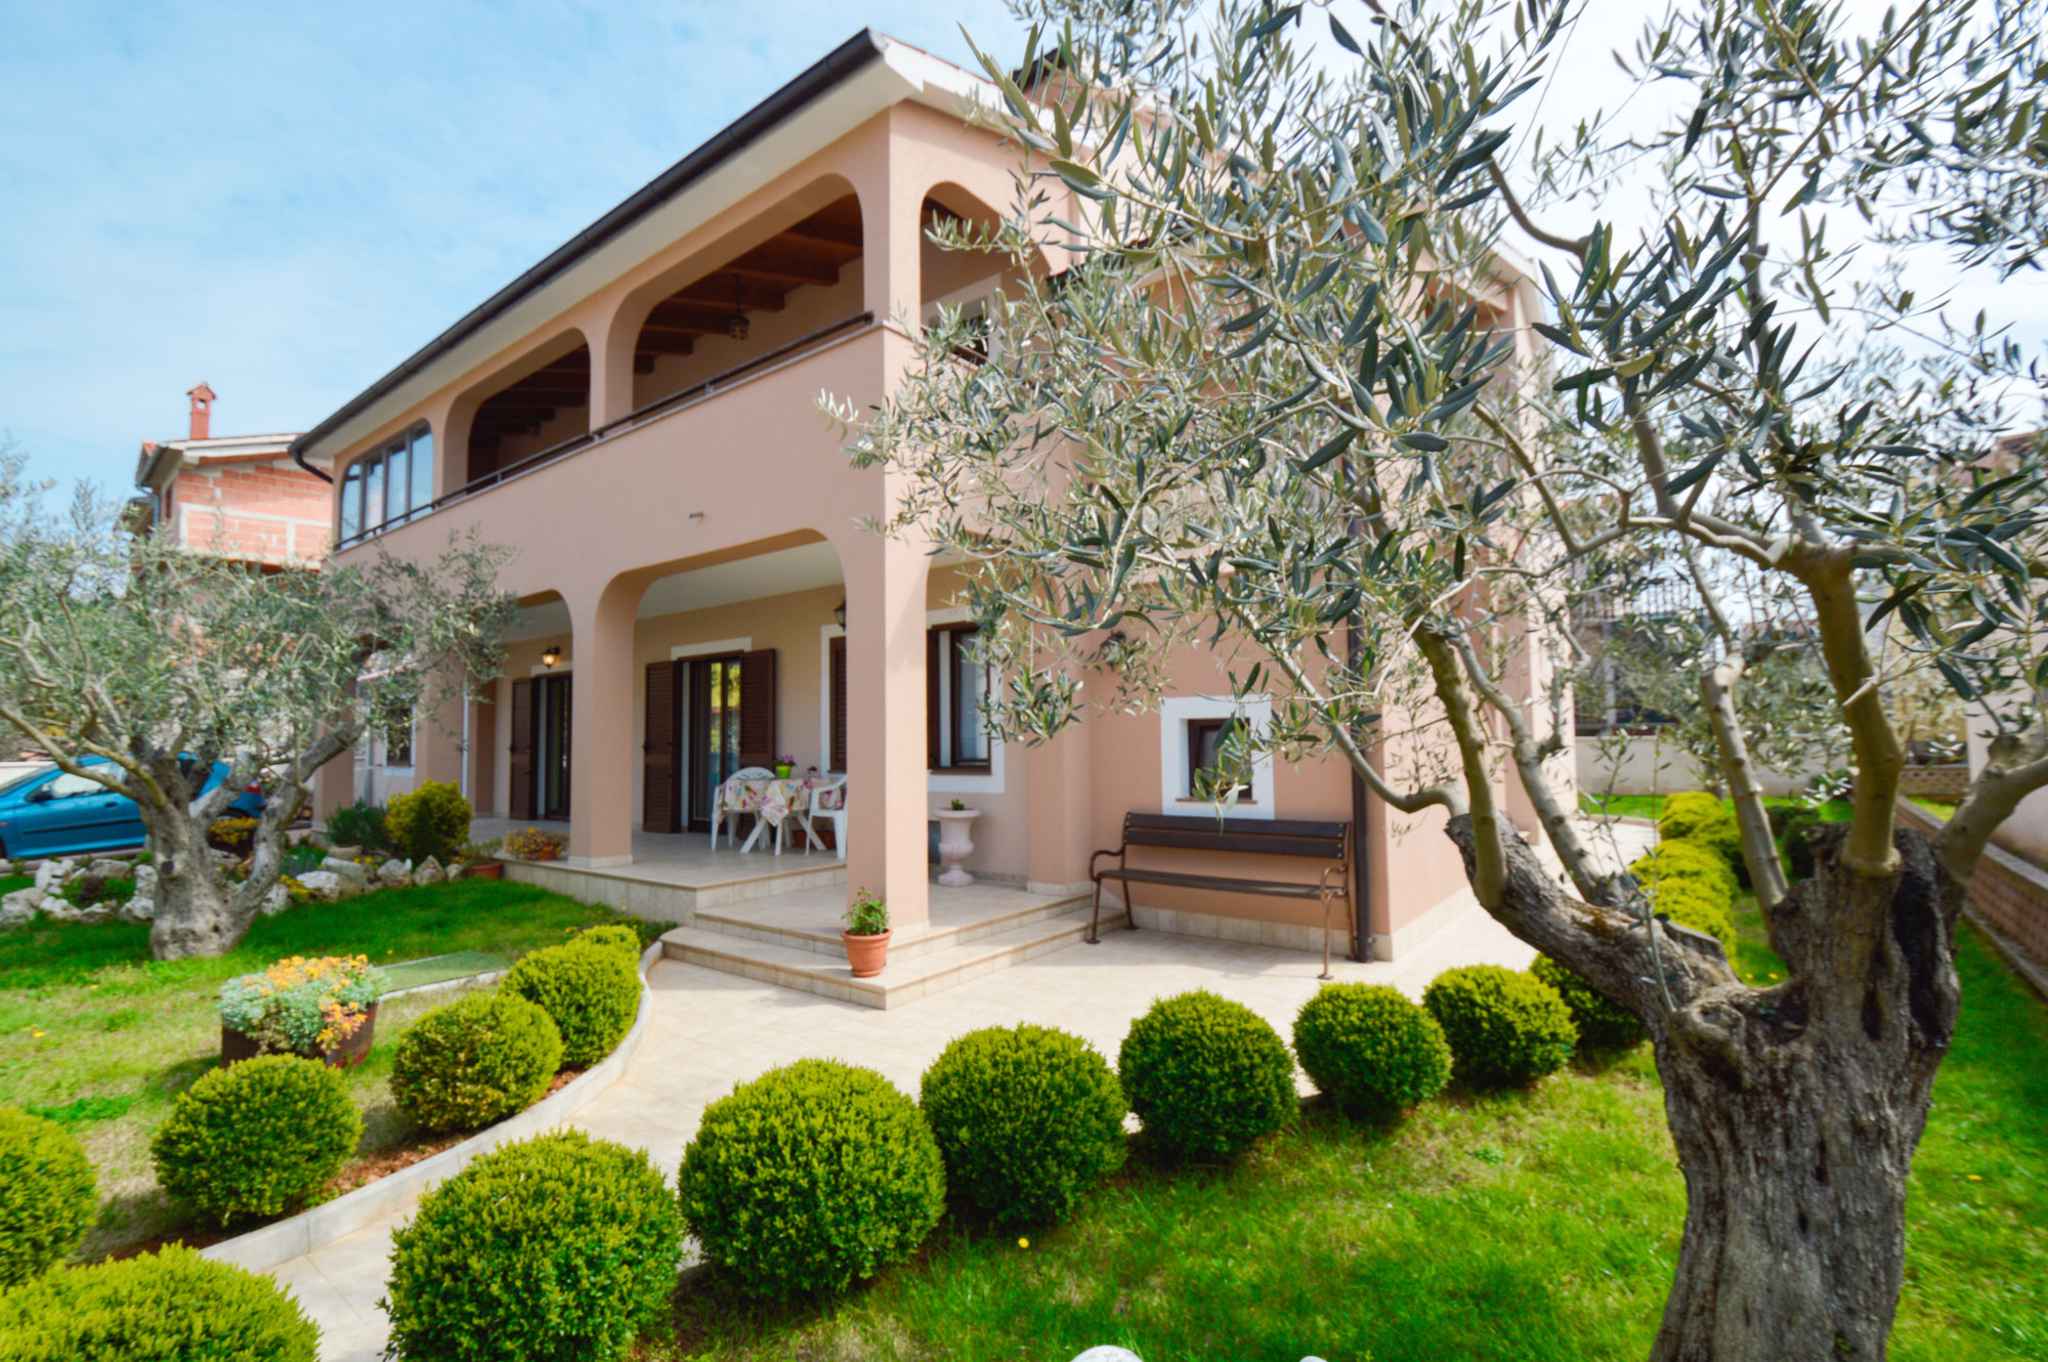 Ferienwohnung mit schöner Terrasse und Intern  in Istrien